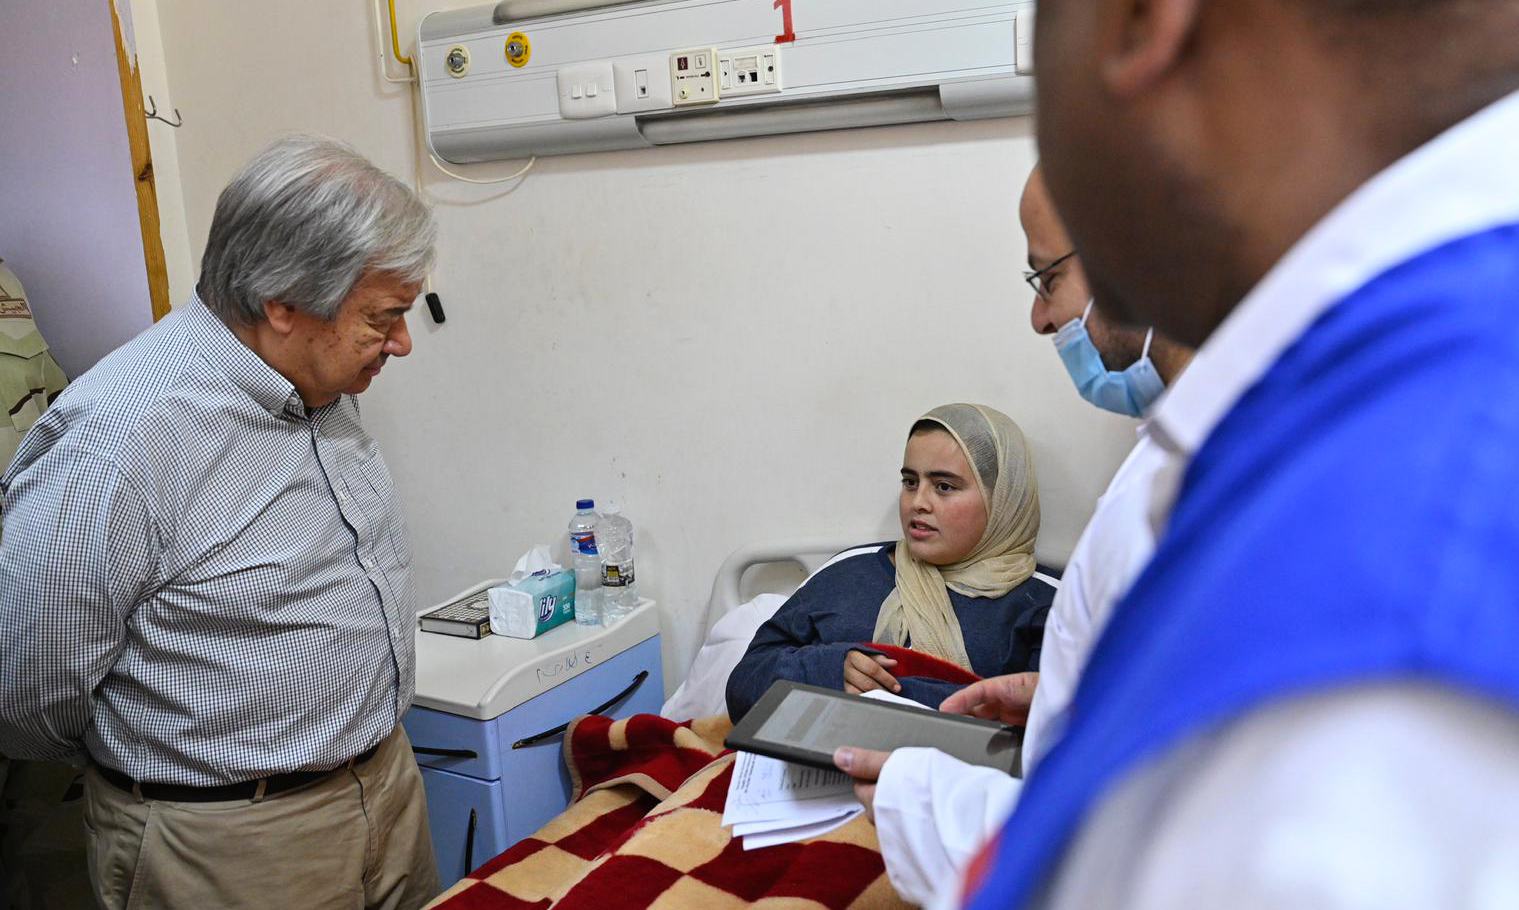 سیکرٹری جنرل انتونیو گوتیرش مصر کے سرحدی علاقے العریش کے ہسپتال میں ایک فلسطینی مریضہ کی خیریت دریافت کر رہے ہیں۔